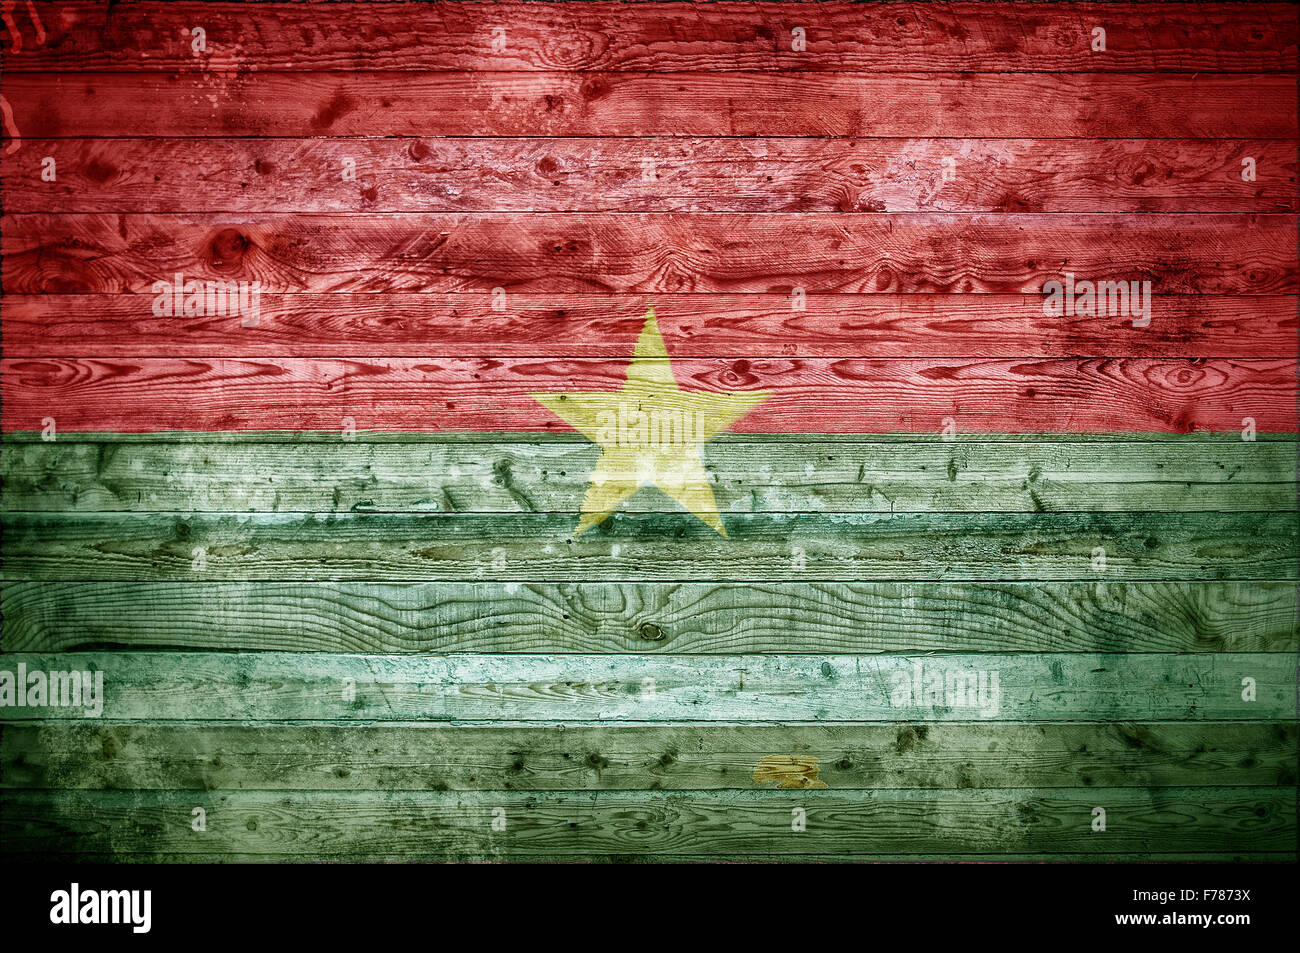 Une vignetted image de fond du drapeau du Burkina Faso peints sur des planches de bois d'un mur ou le plancher. Banque D'Images